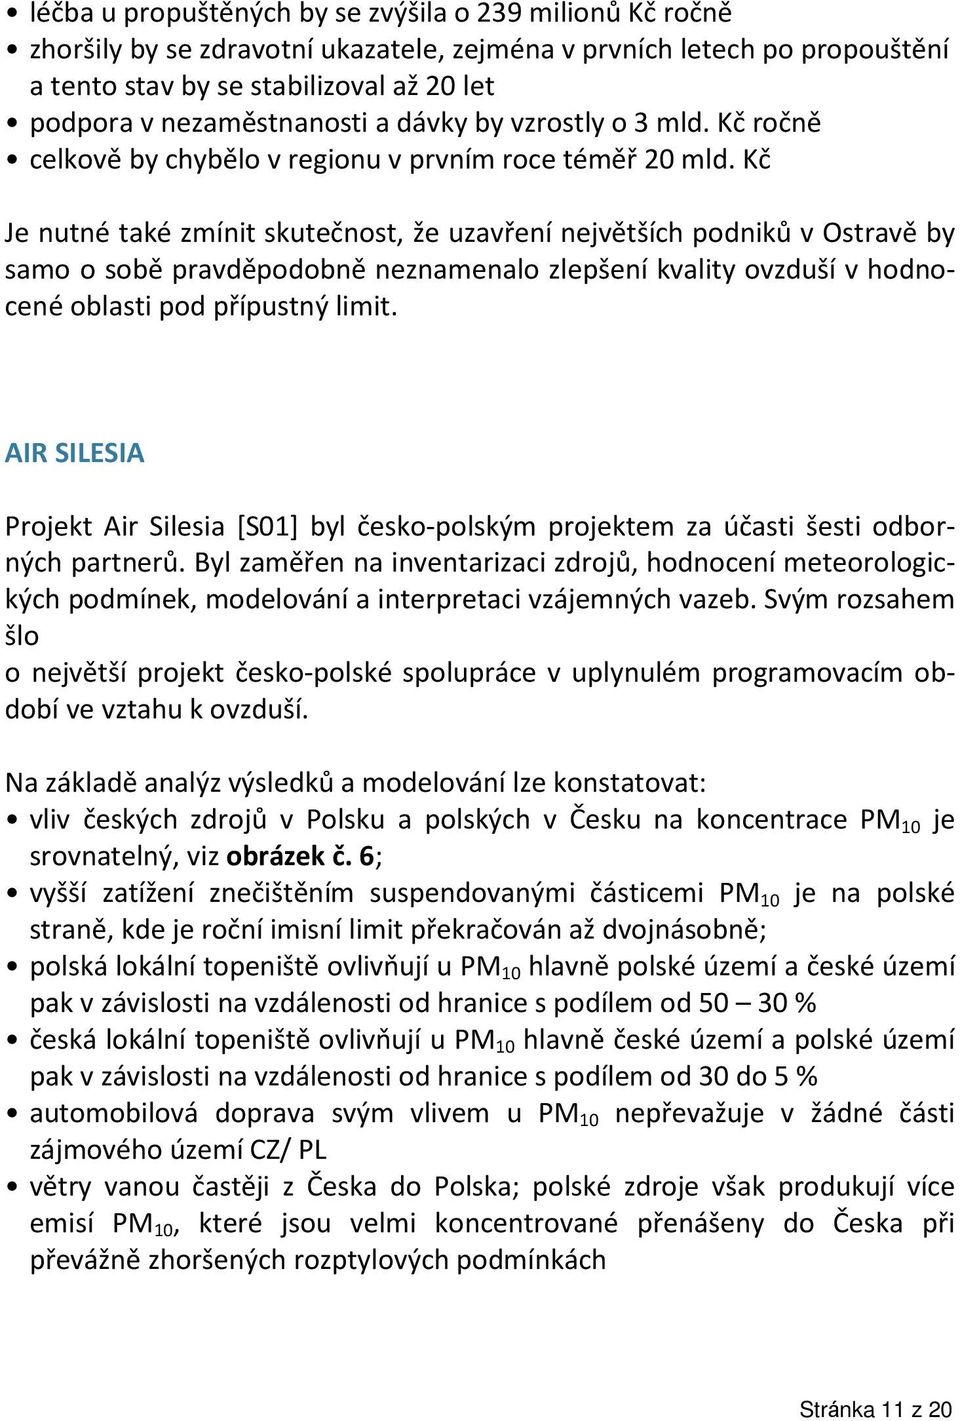 Kč Je nutné také zmínit skutečnost, že uzavření největších podniků v Ostravě by samo o sobě pravděpodobně neznamenalo zlepšení kvality ovzduší v hodnocené oblasti pod přípustný limit.